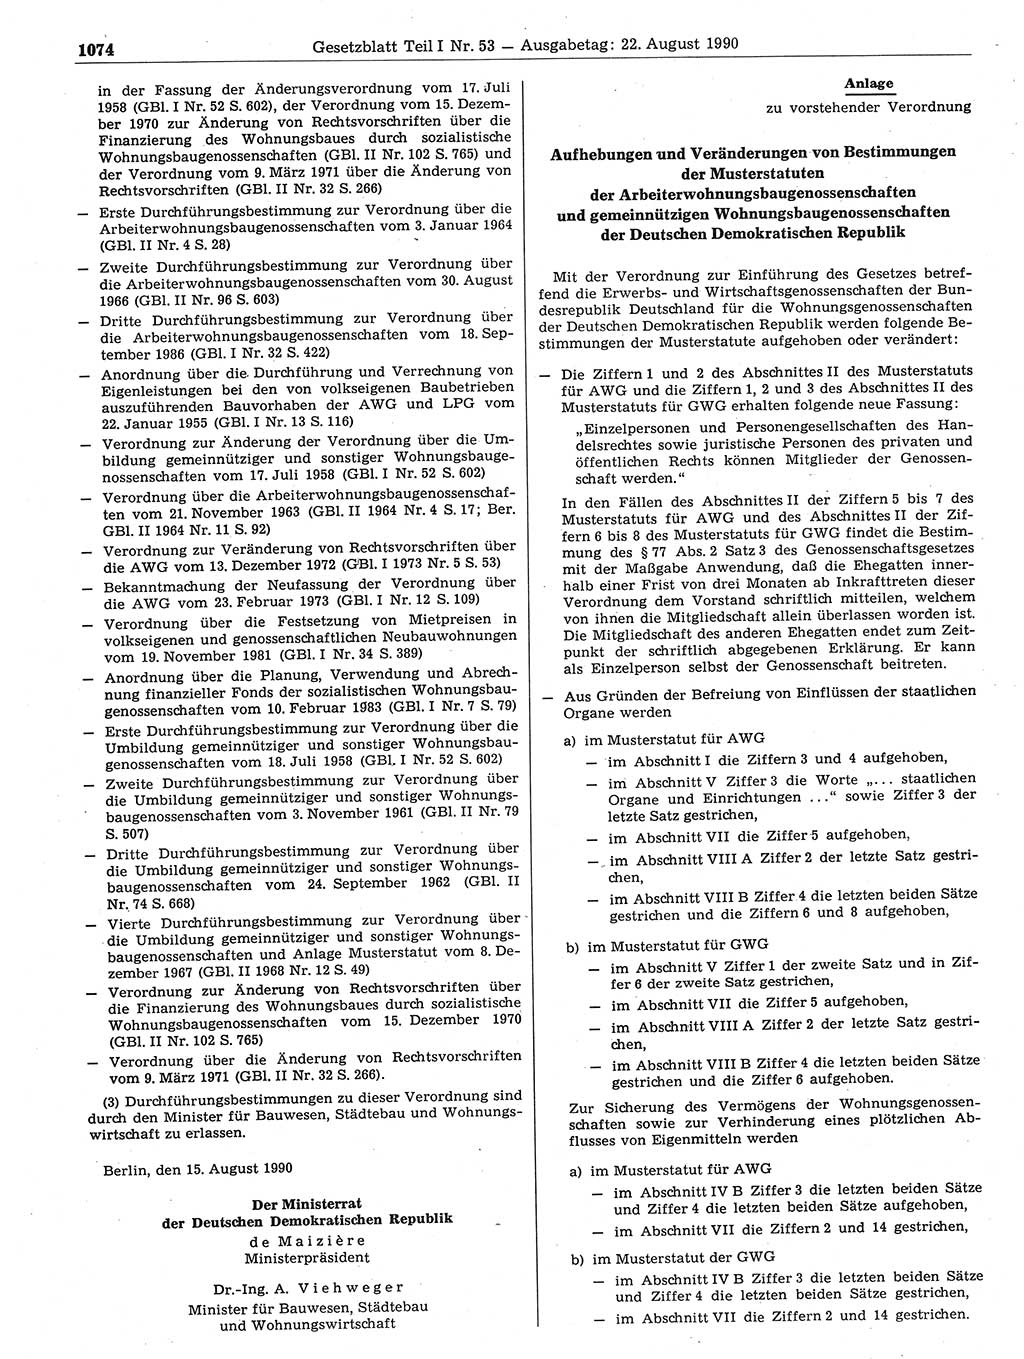 Gesetzblatt (GBl.) der Deutschen Demokratischen Republik (DDR) Teil Ⅰ 1990, Seite 1074 (GBl. DDR Ⅰ 1990, S. 1074)